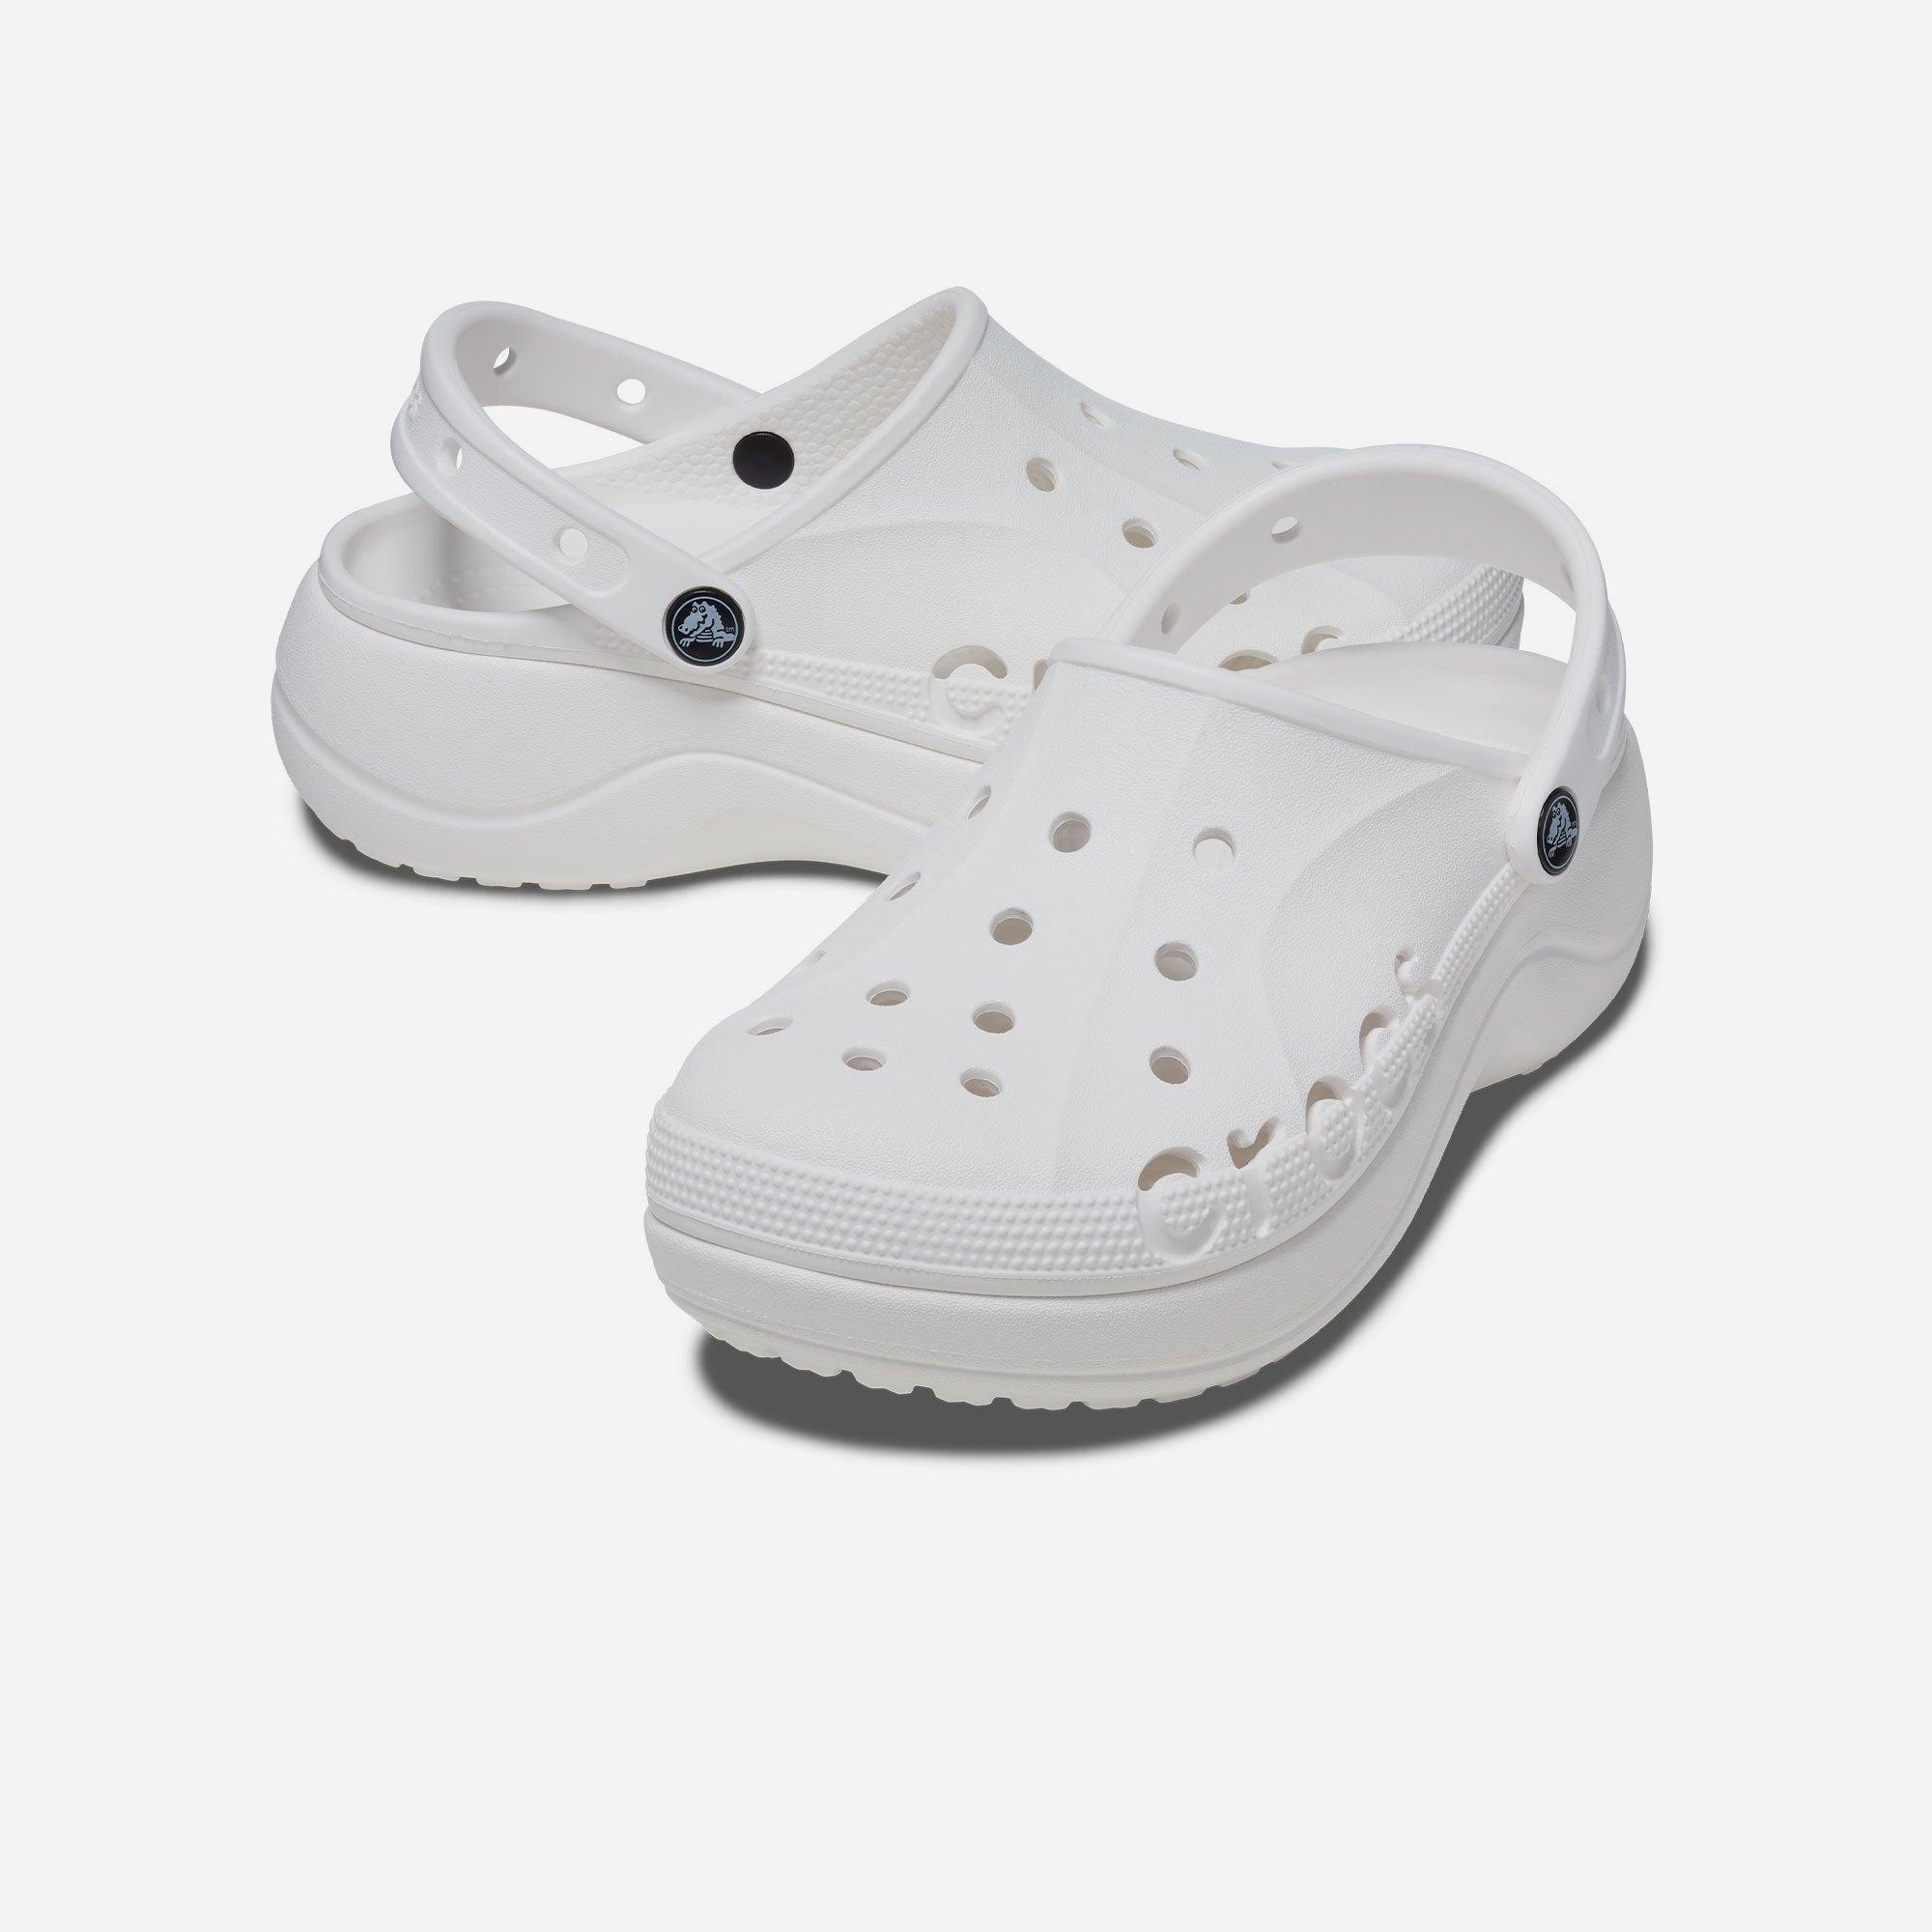 Giày nhựa nữ Crocs Baya Platform - 208186-100